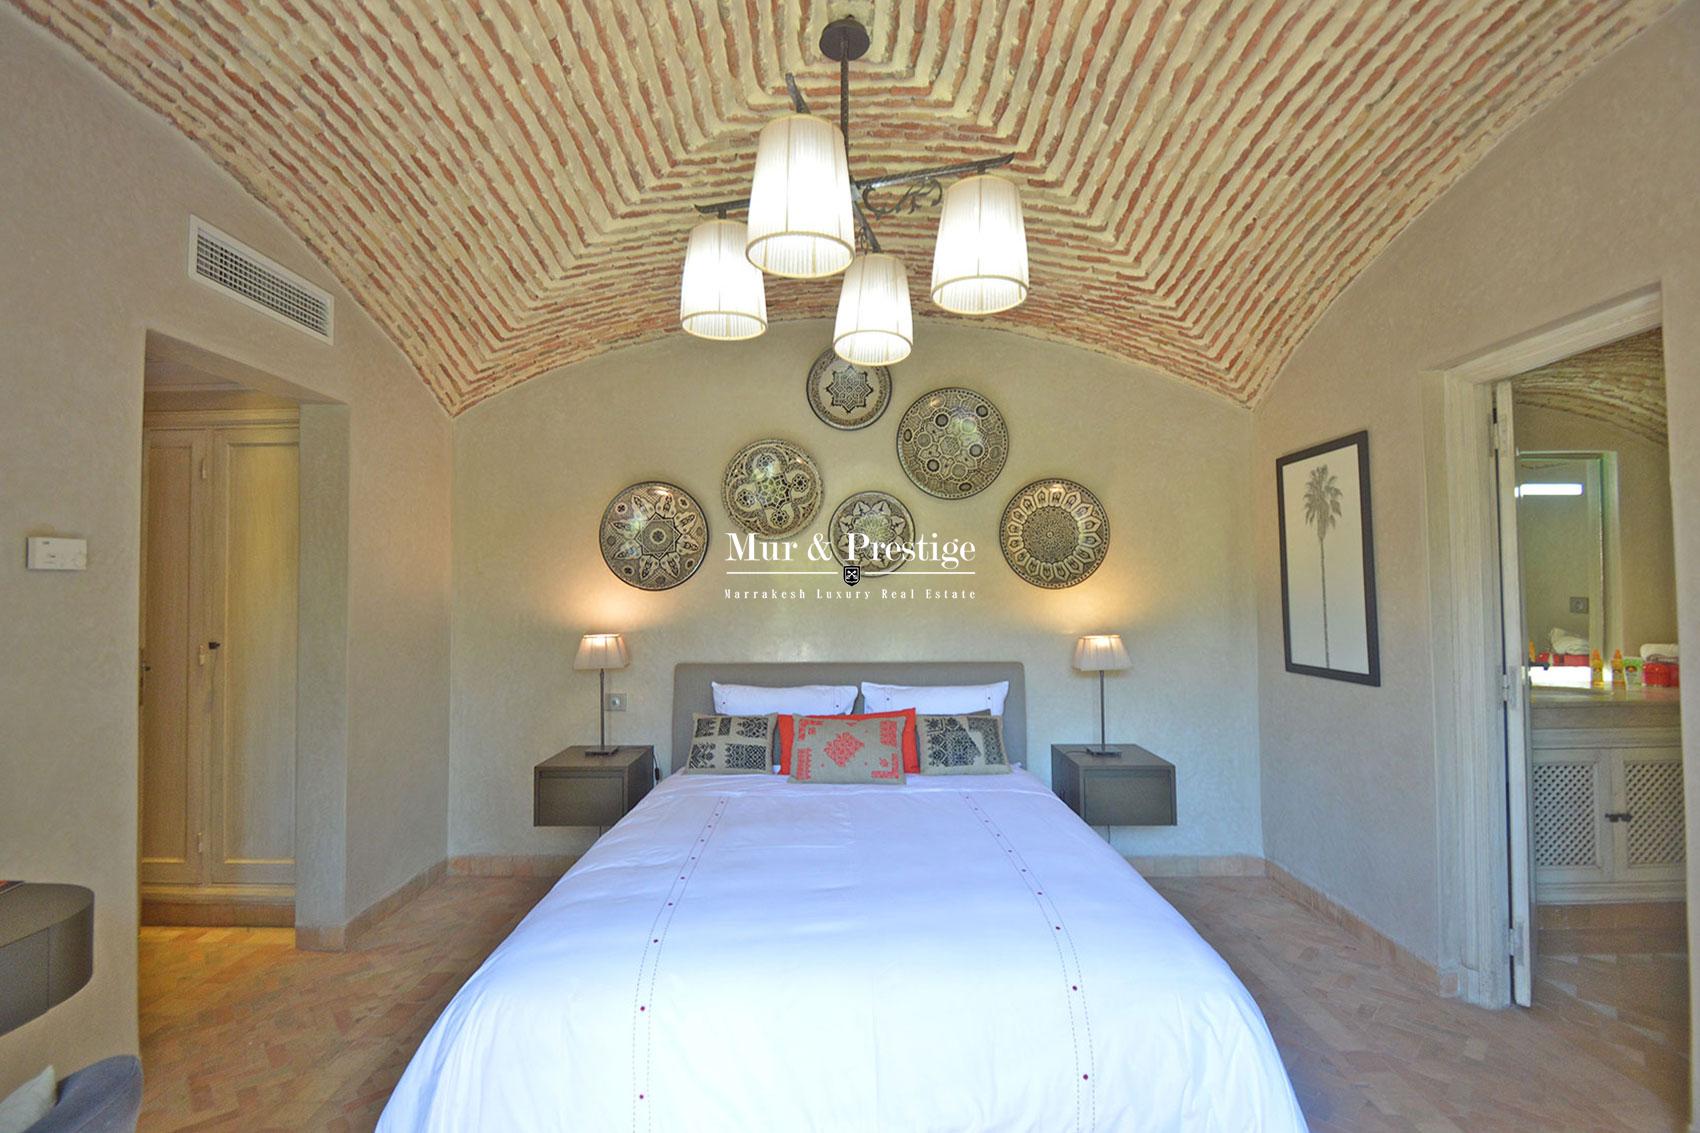 Vente villa a Amelkis a Marrakech